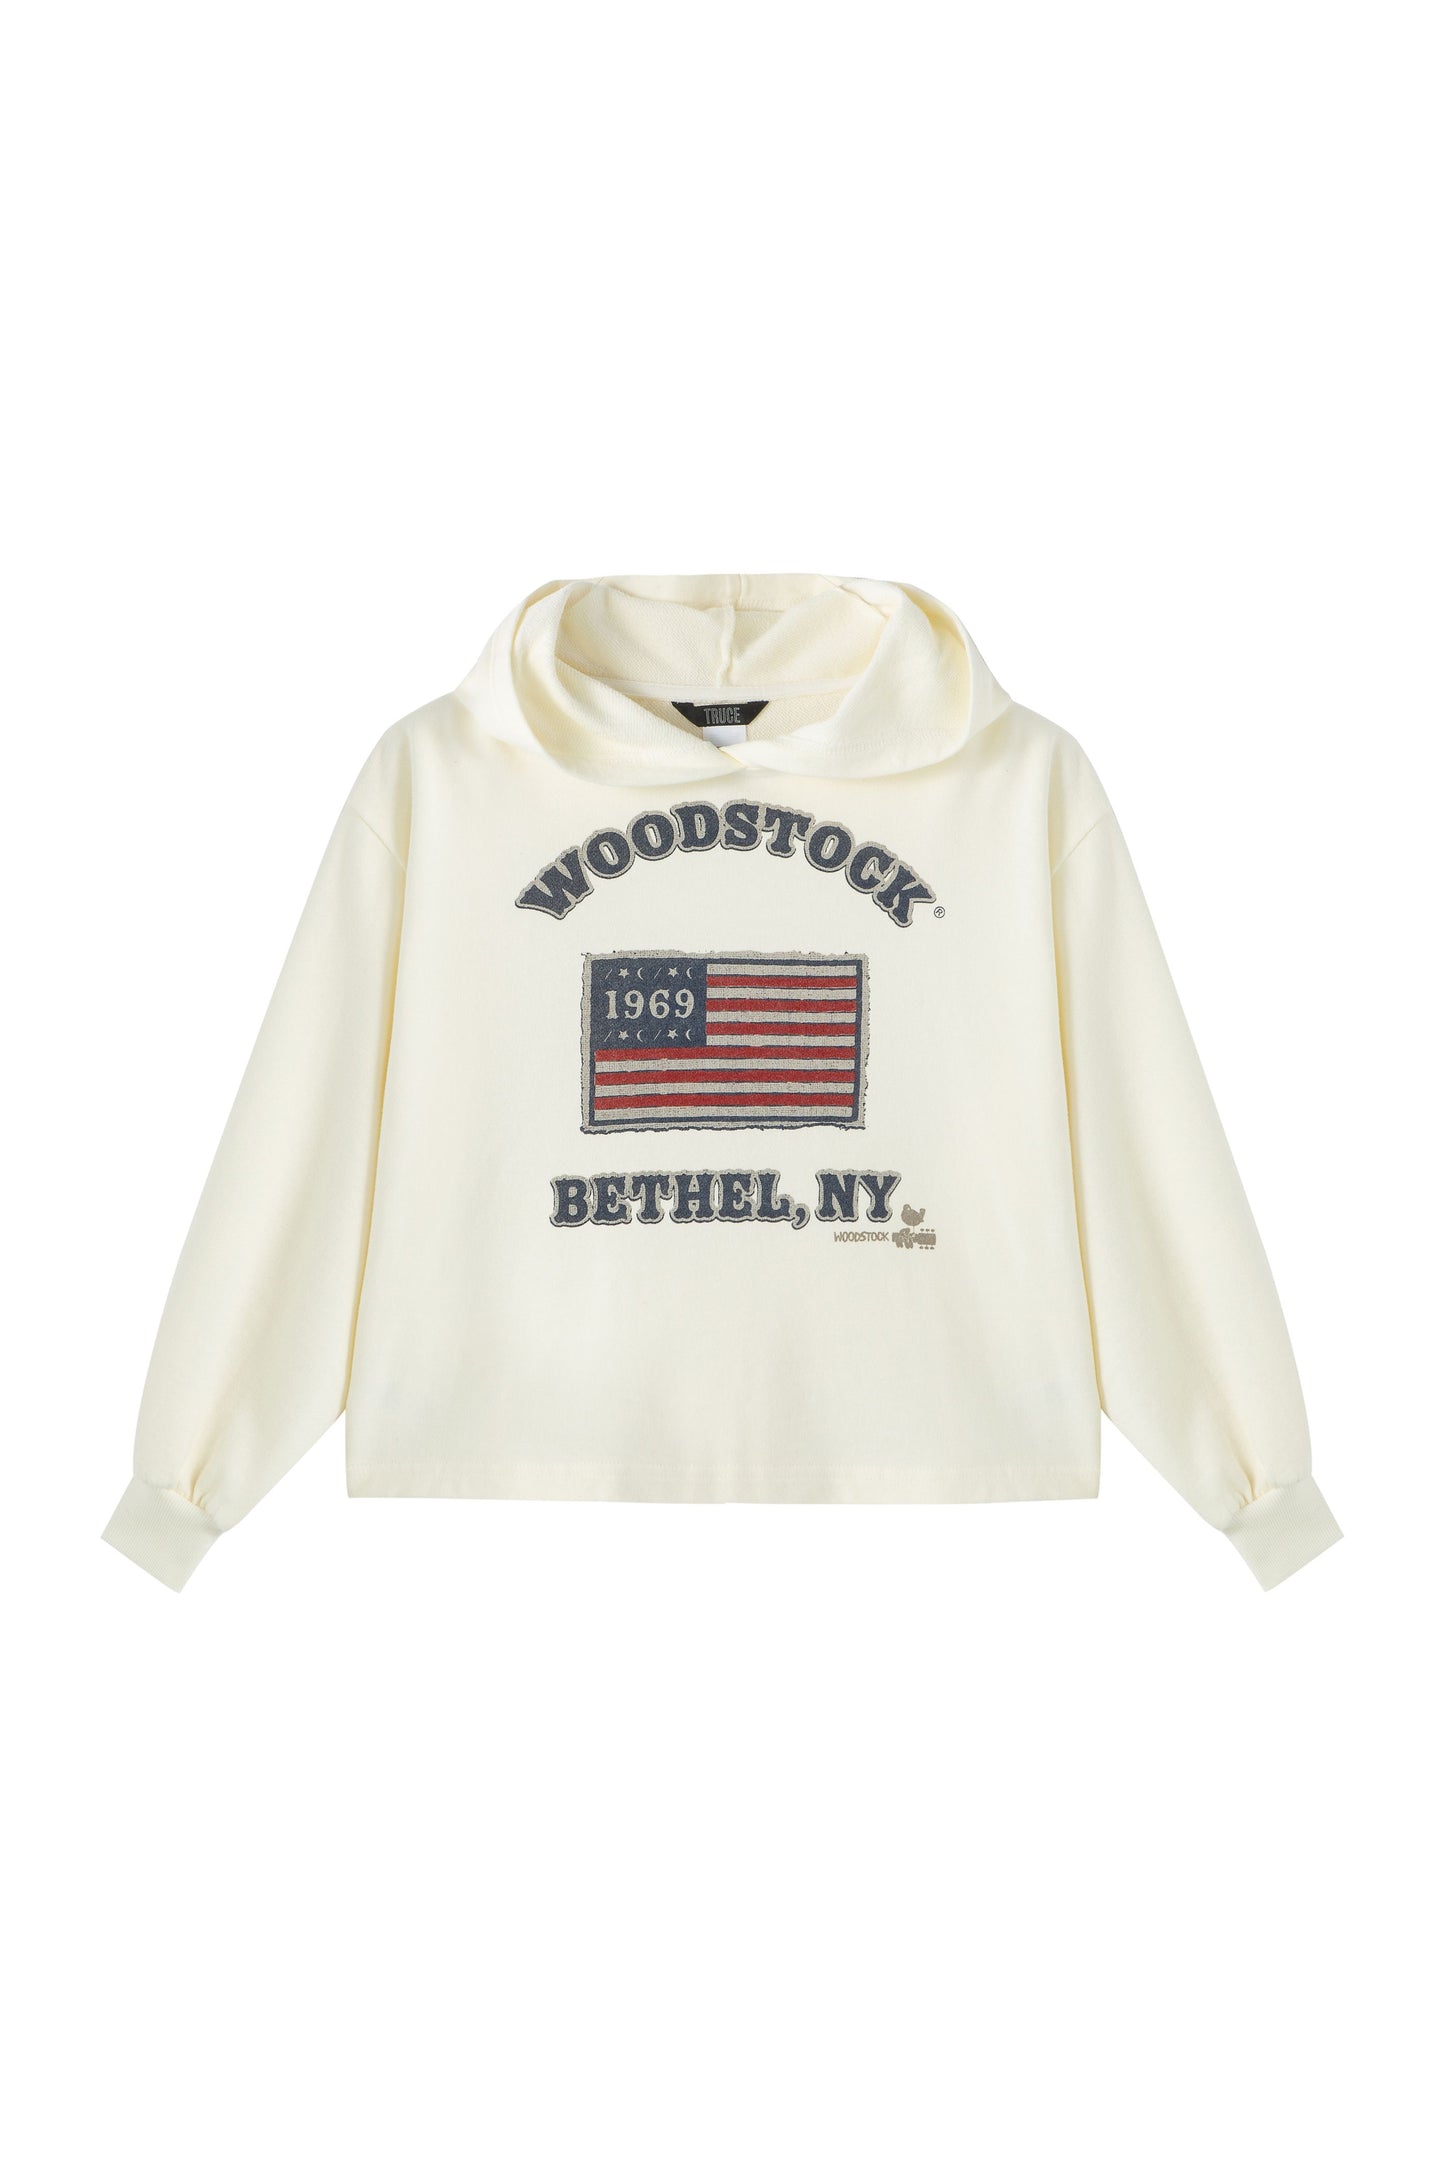 Woodstock Hoodie